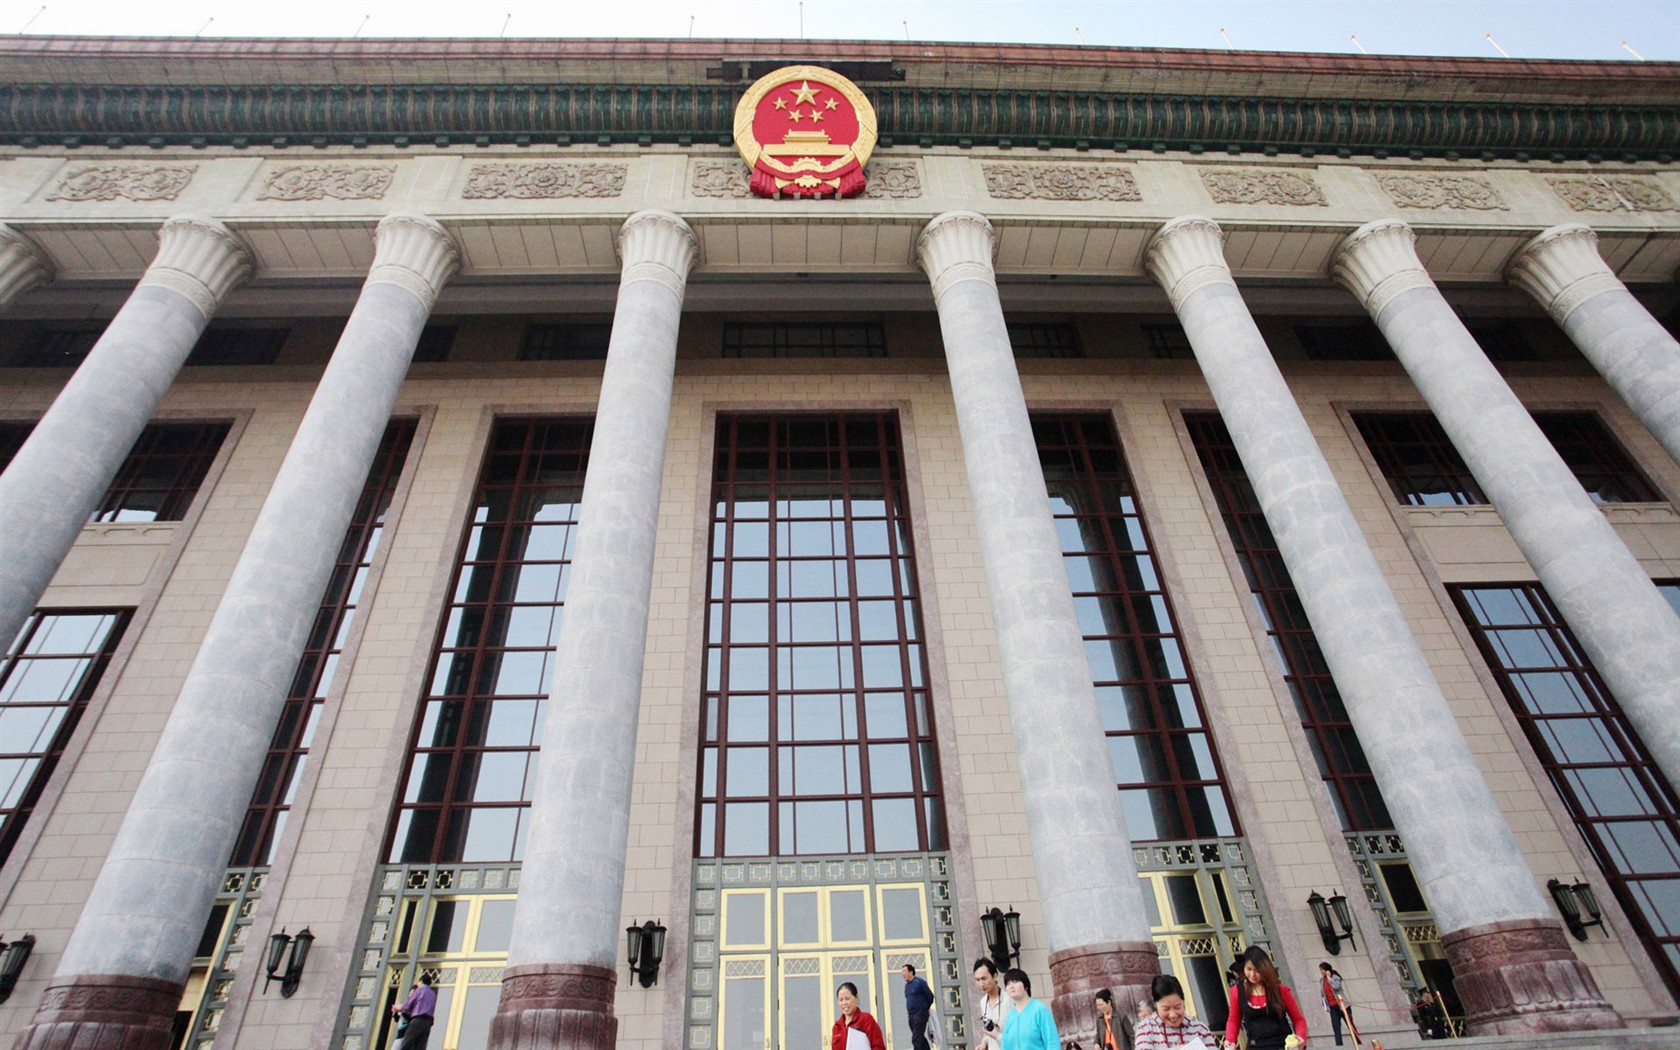 Peking Tour - Great Hall (GGC Werke) #14 - 1680x1050